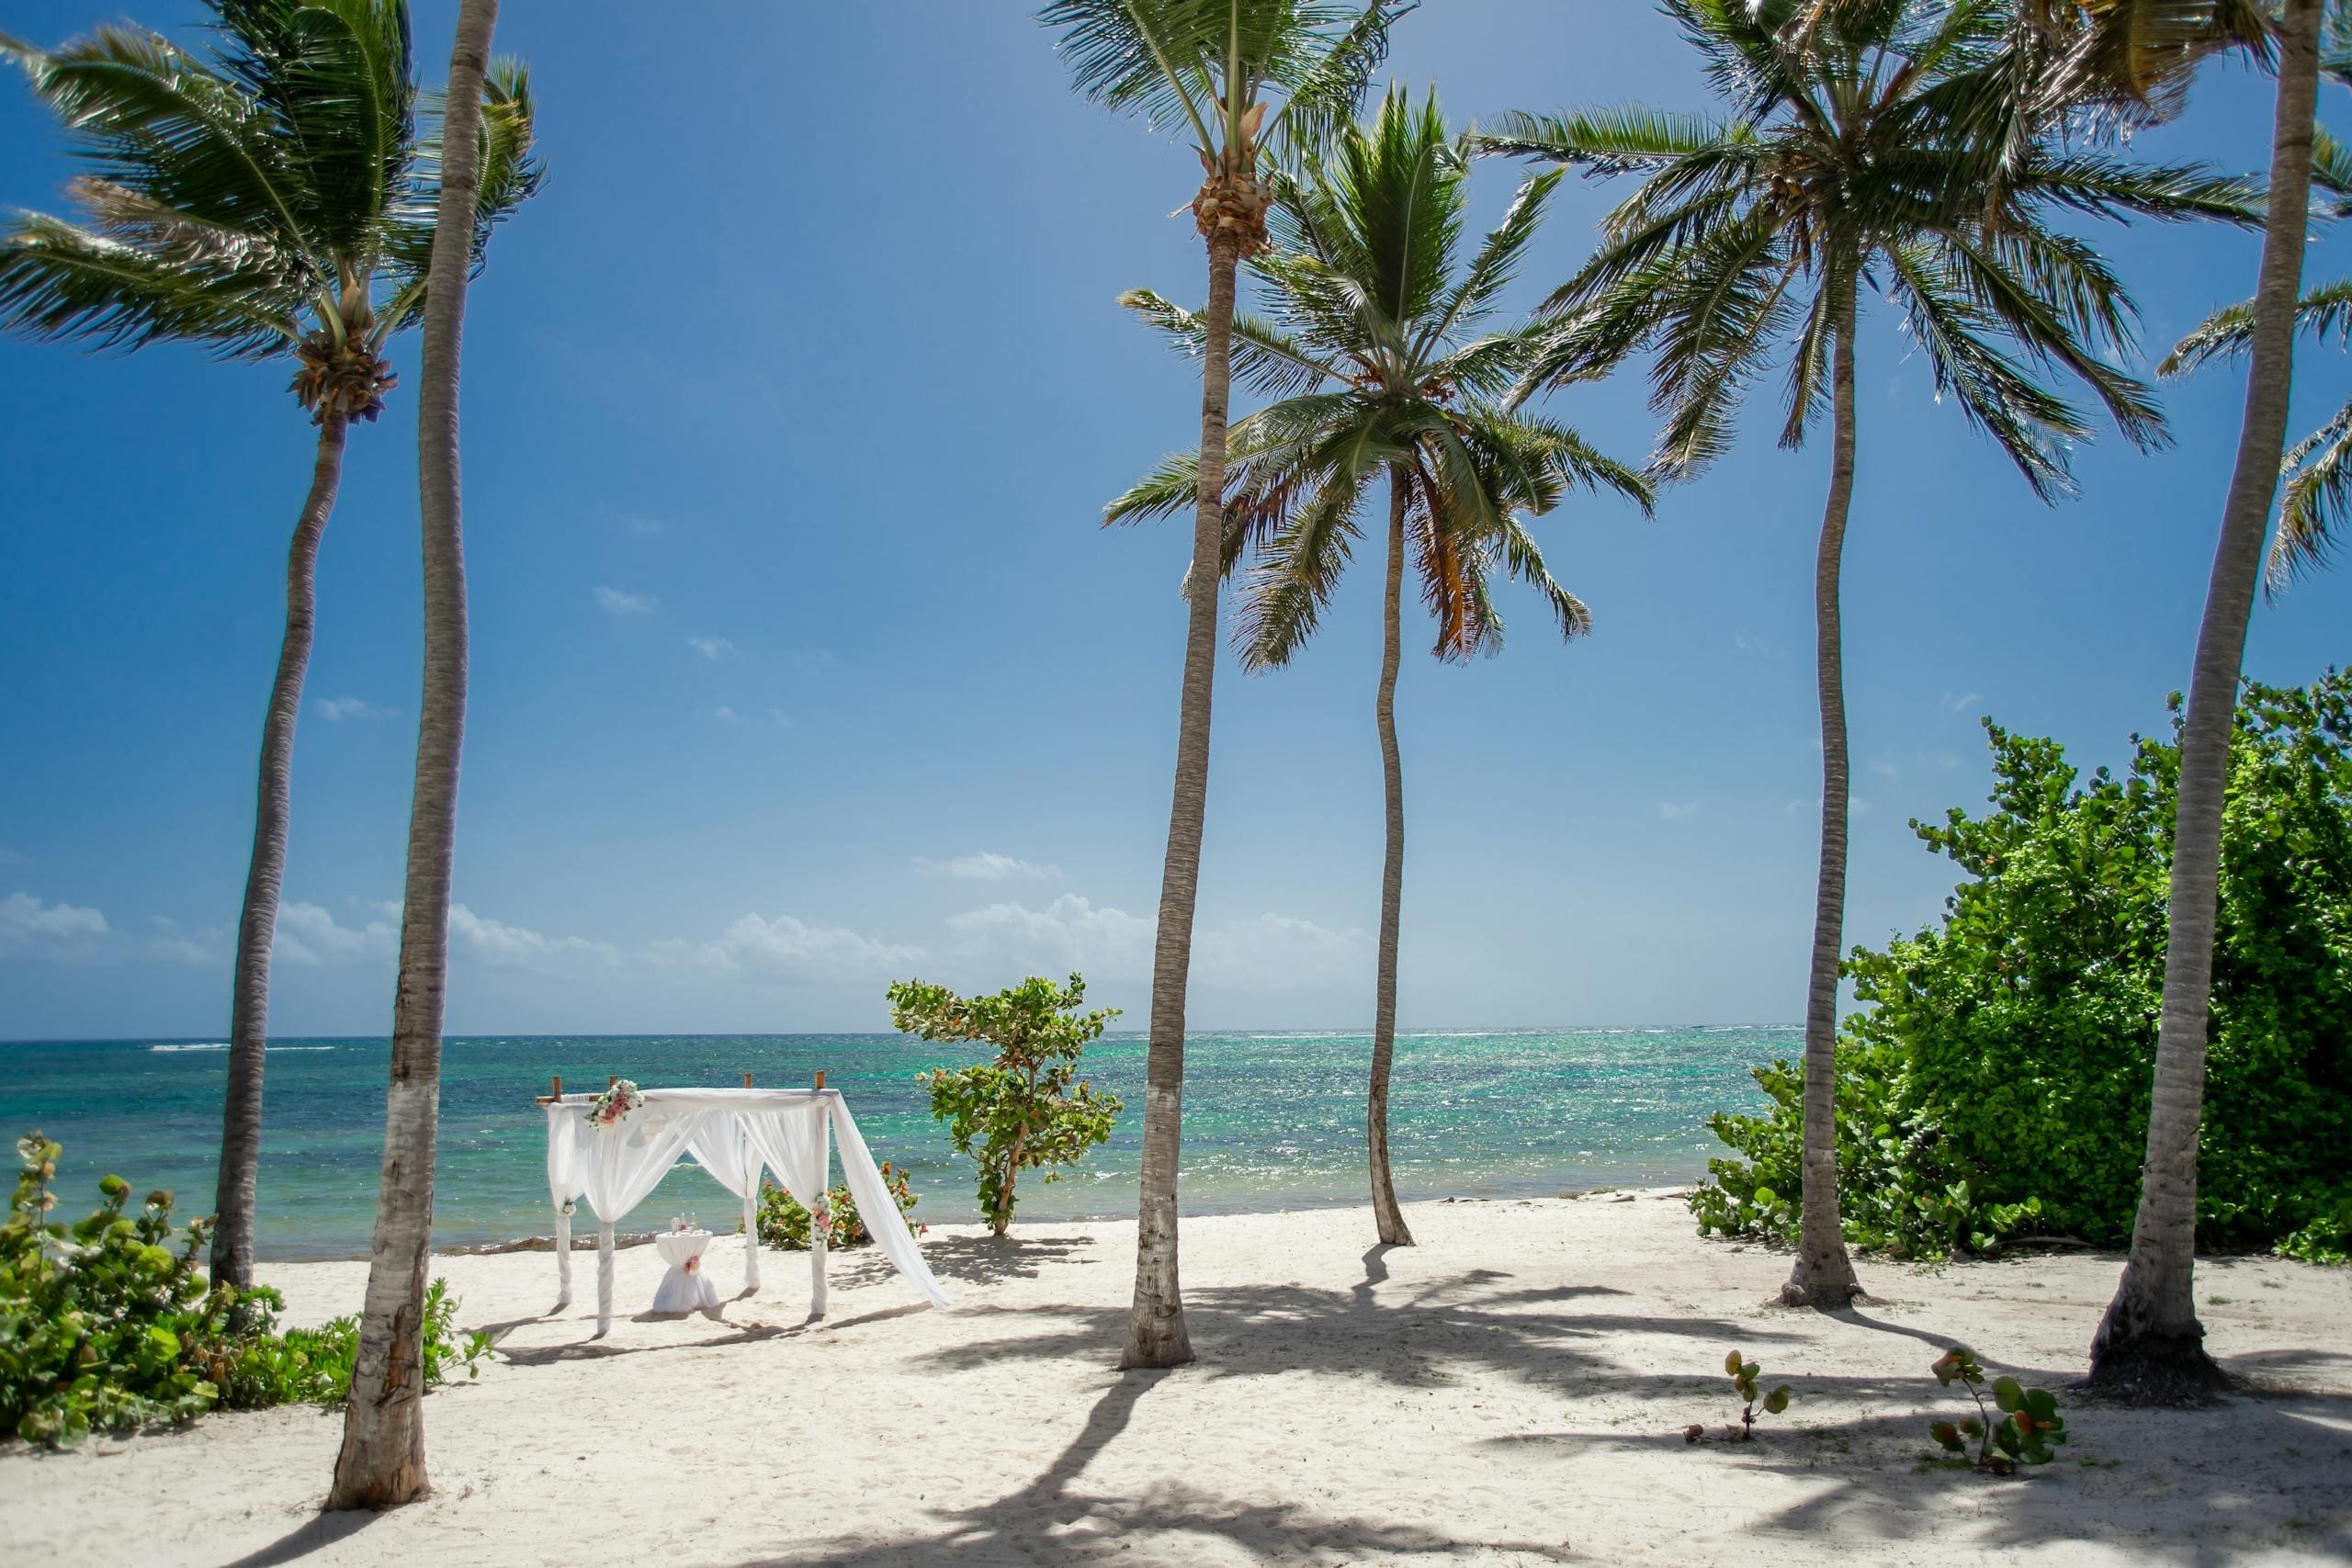 Wedding Altar on Beach in Tropical Resort